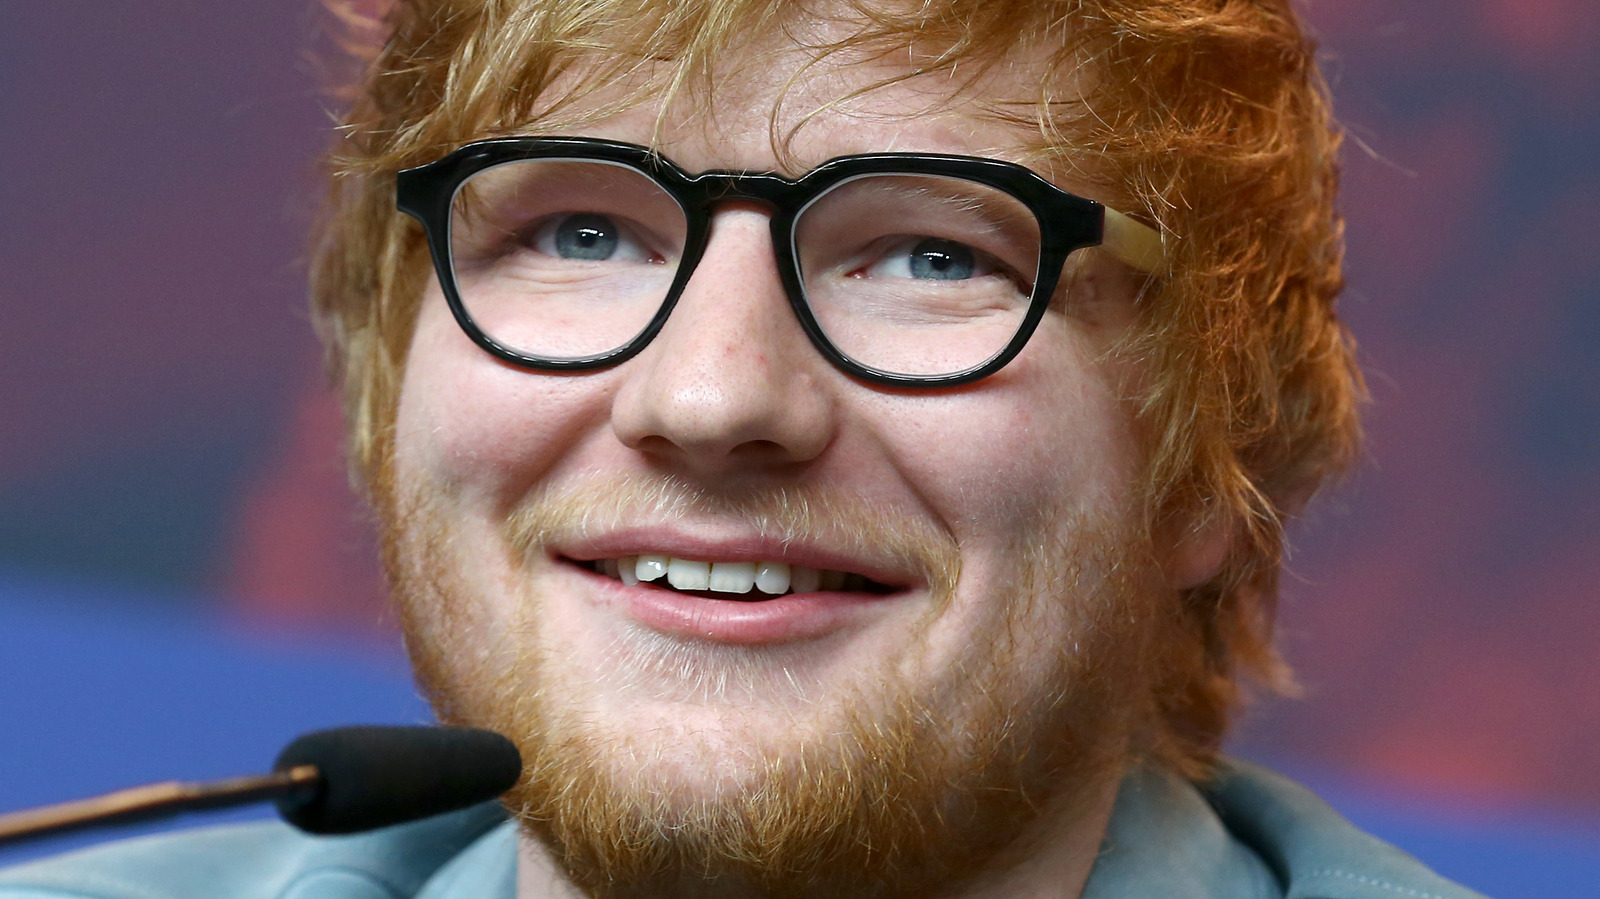 Ed Sheeran has more tattoos than you might think